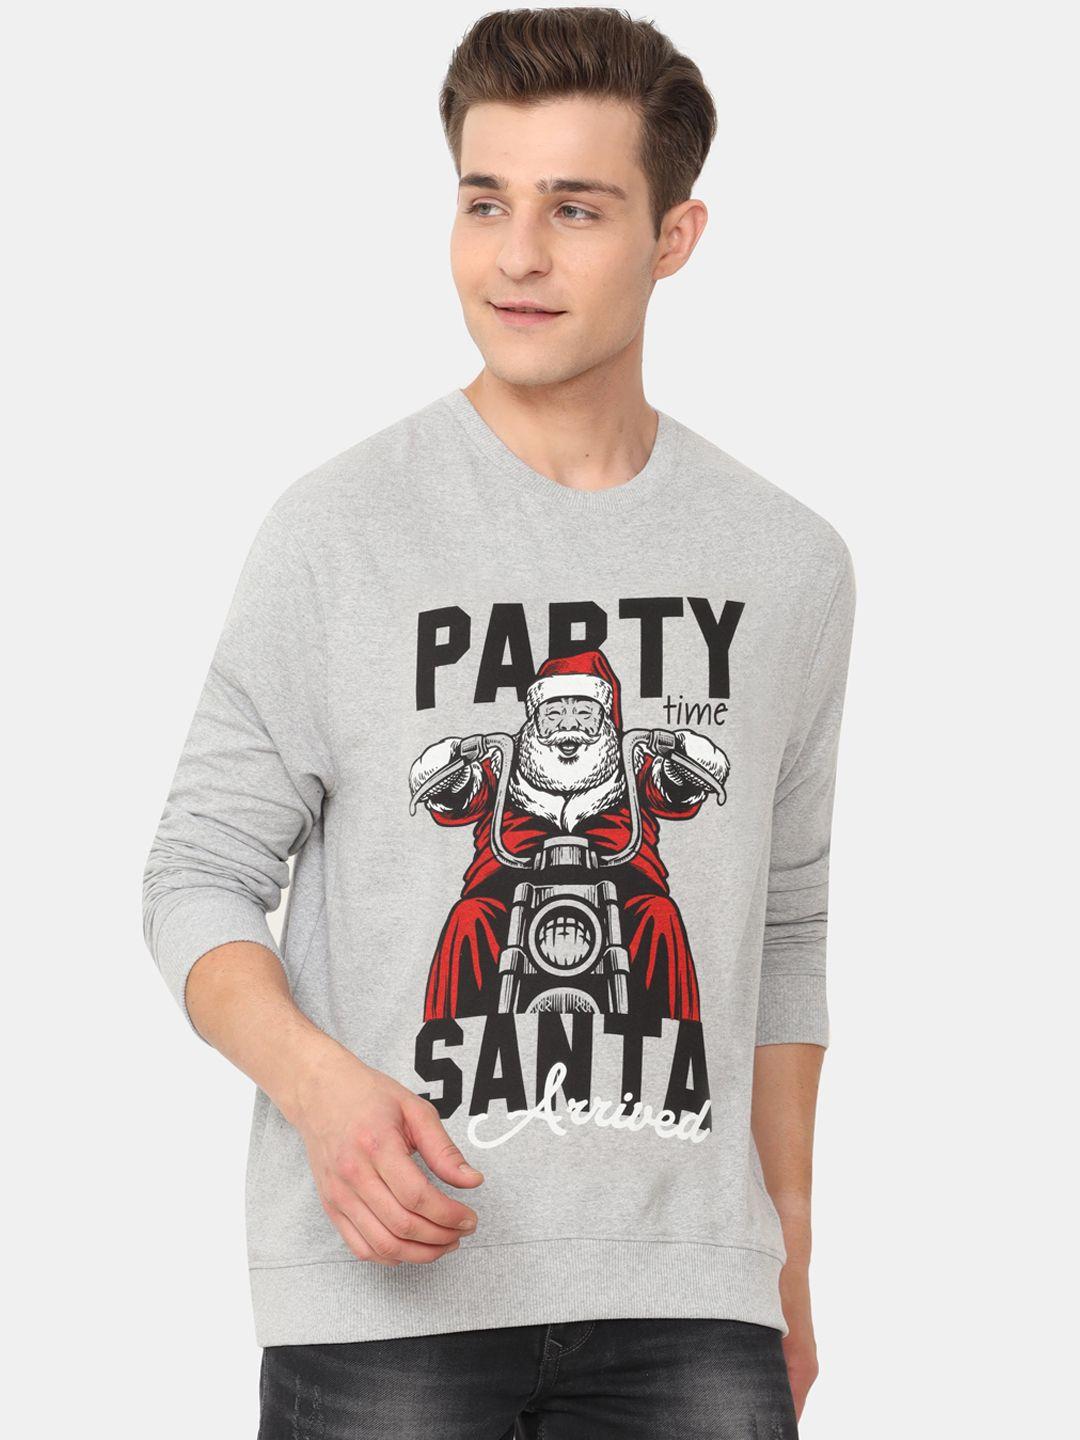 ardeur-men-grey-graphic-printed-sweatshirt